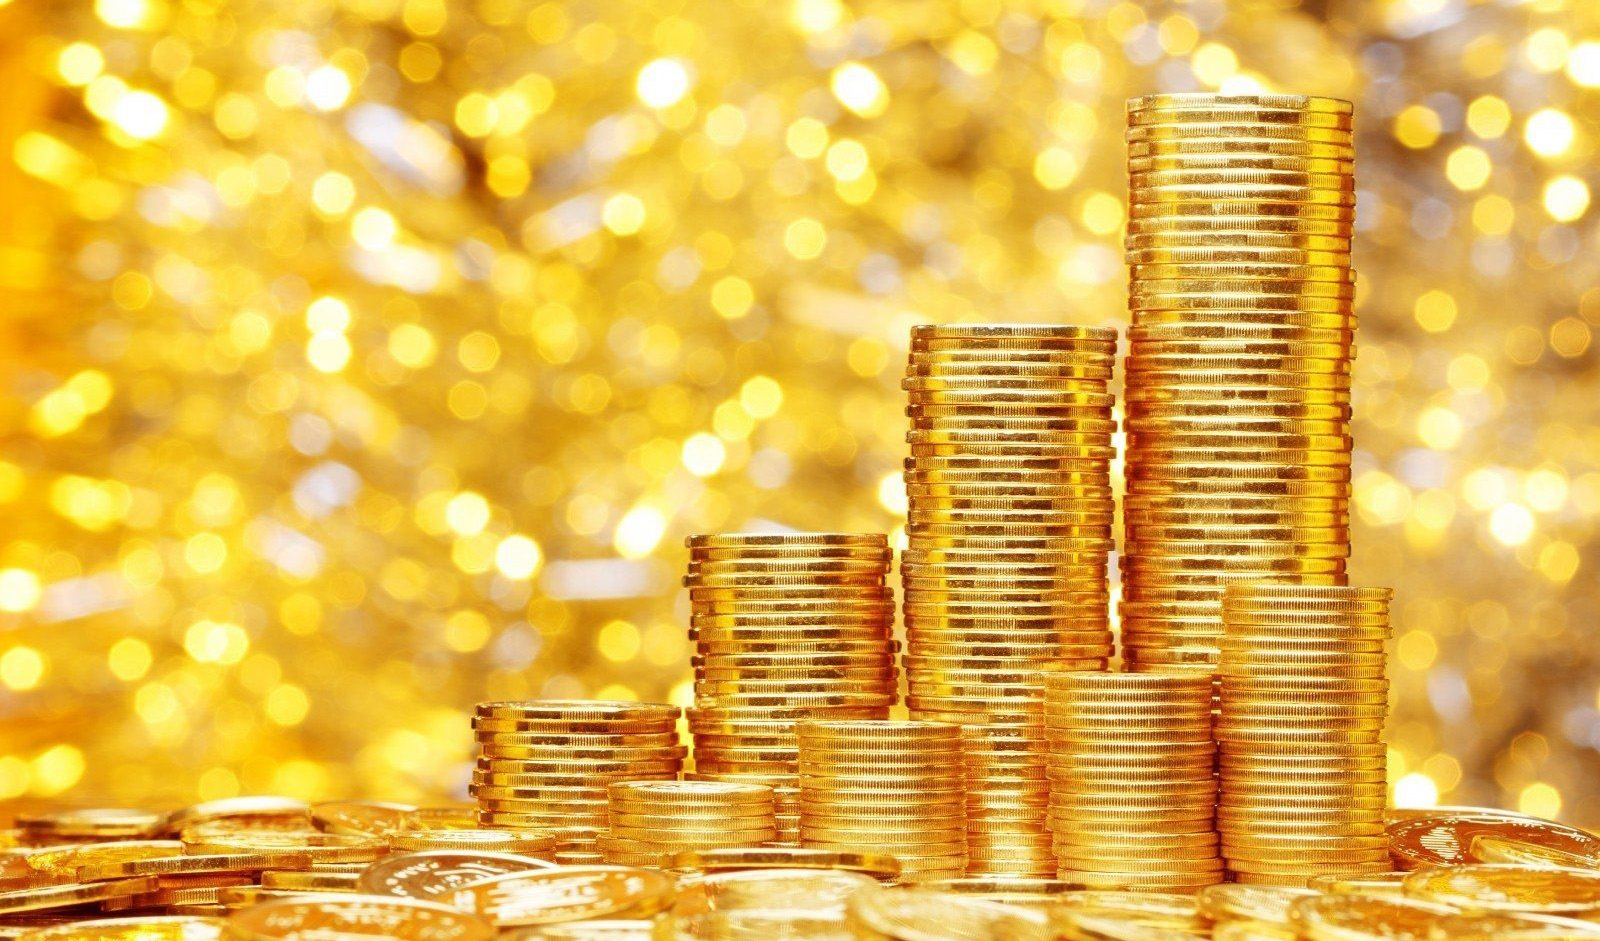 روند کاهش قیمت طلا در هفته آینده ادامه دارد/ حباب سکه به ۶ میلیون تومان رسید